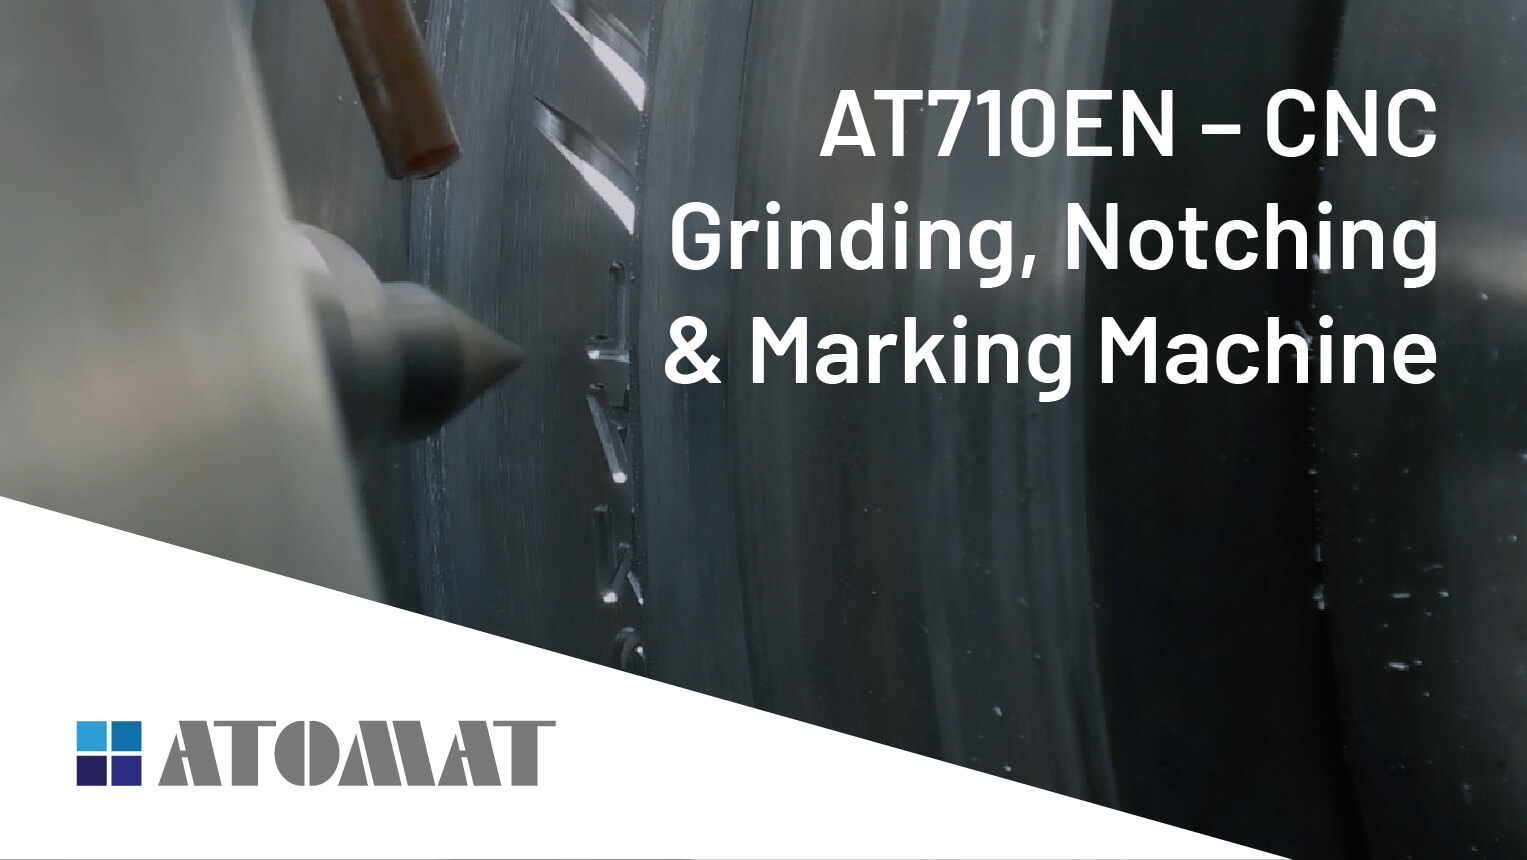 AT710EN - CNC Grinding, Notching & Marking Machine